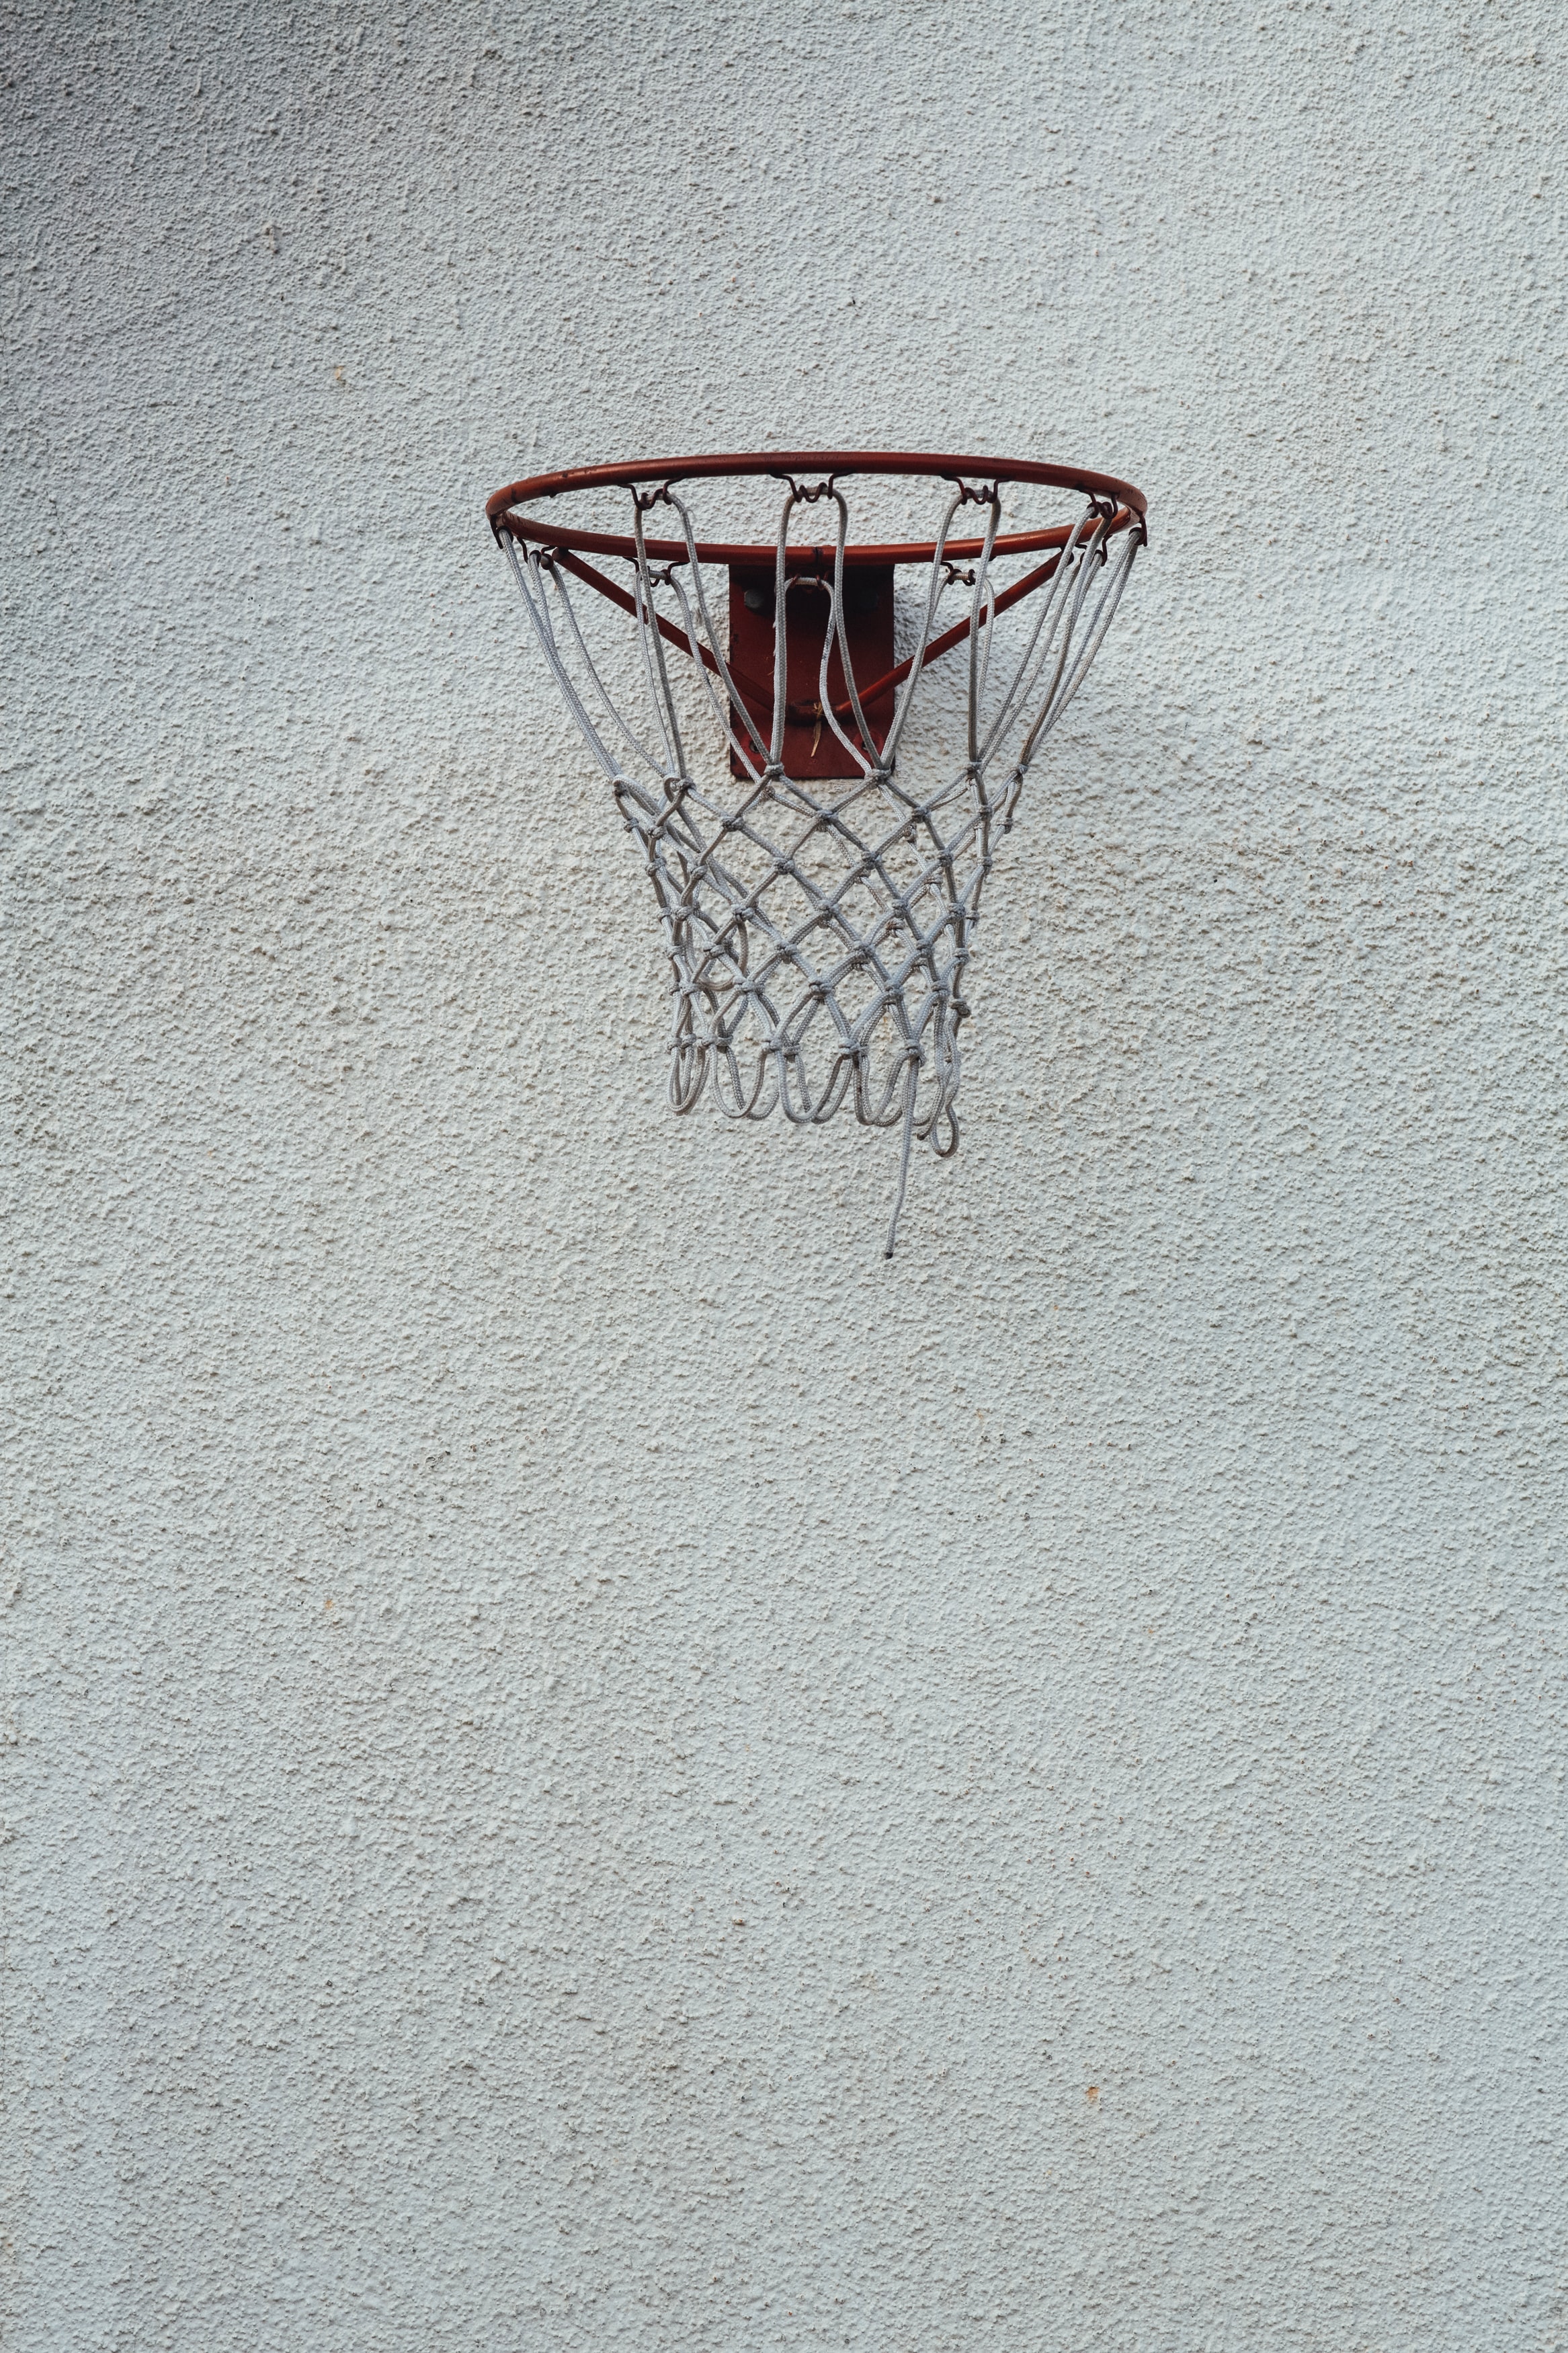 basketball, basketball hoop, basketball ring, miscellanea, miscellaneous, grid, wall QHD